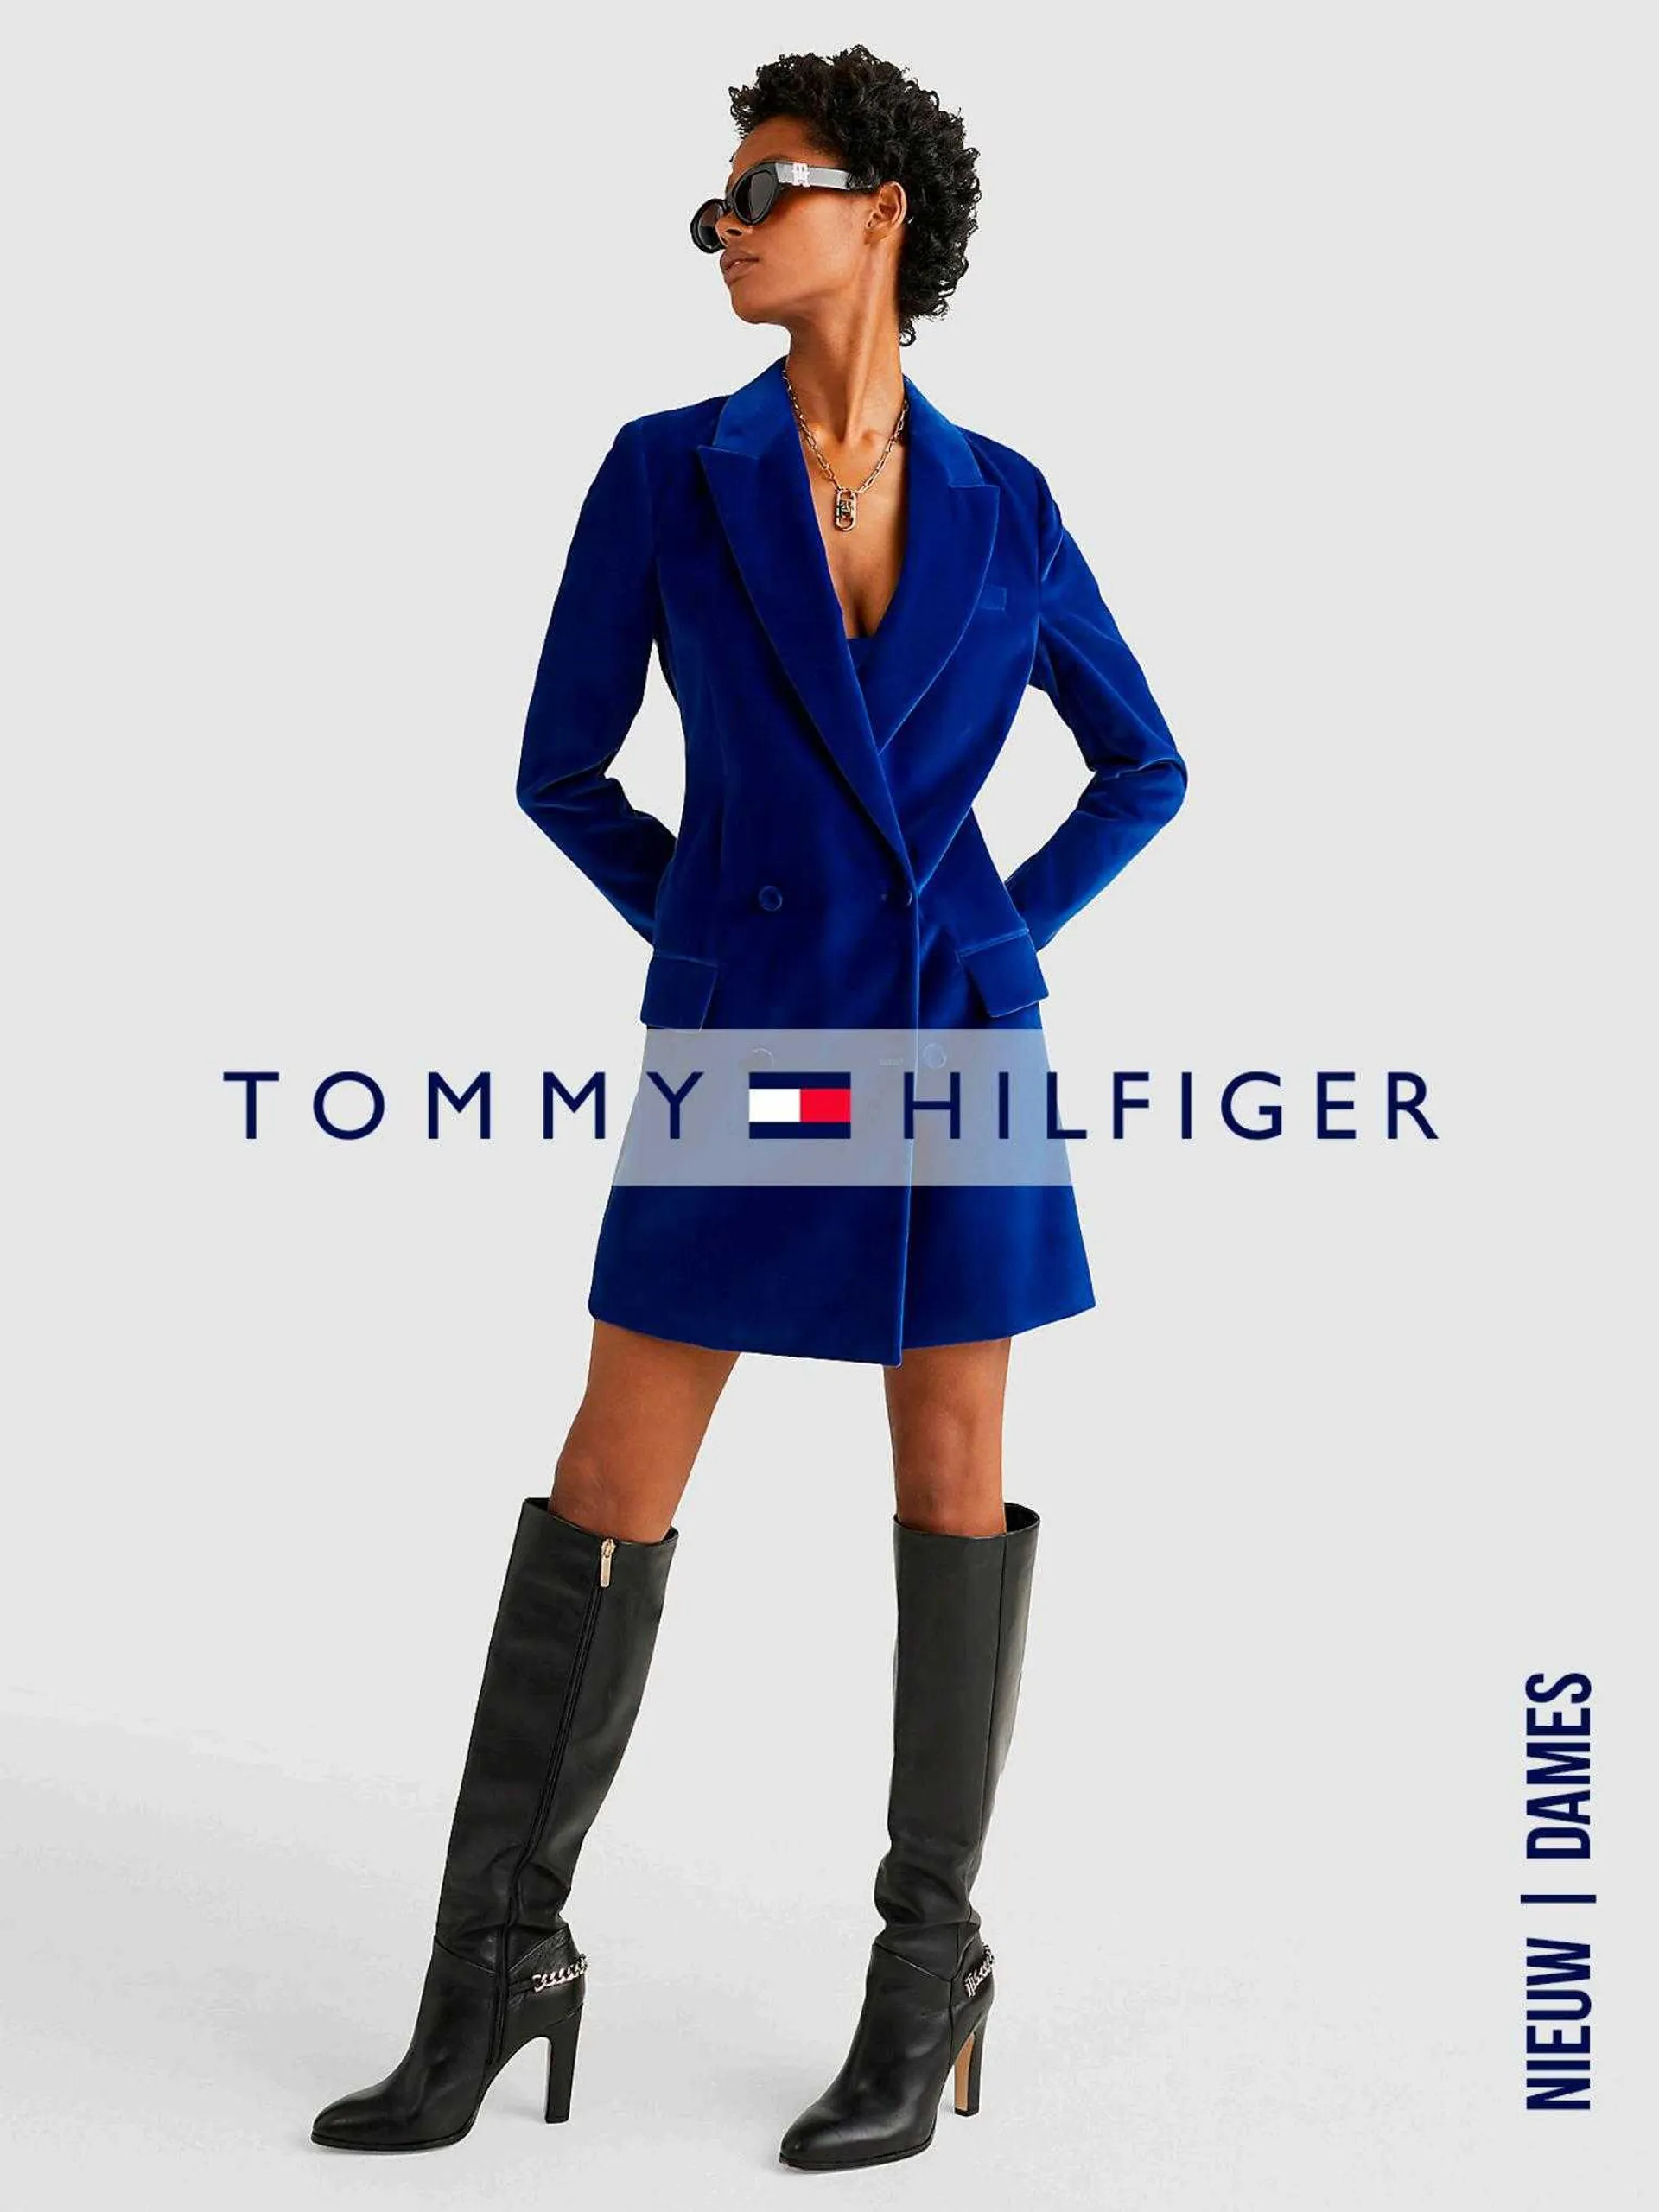 Tommy Hilfiger Folder - 1